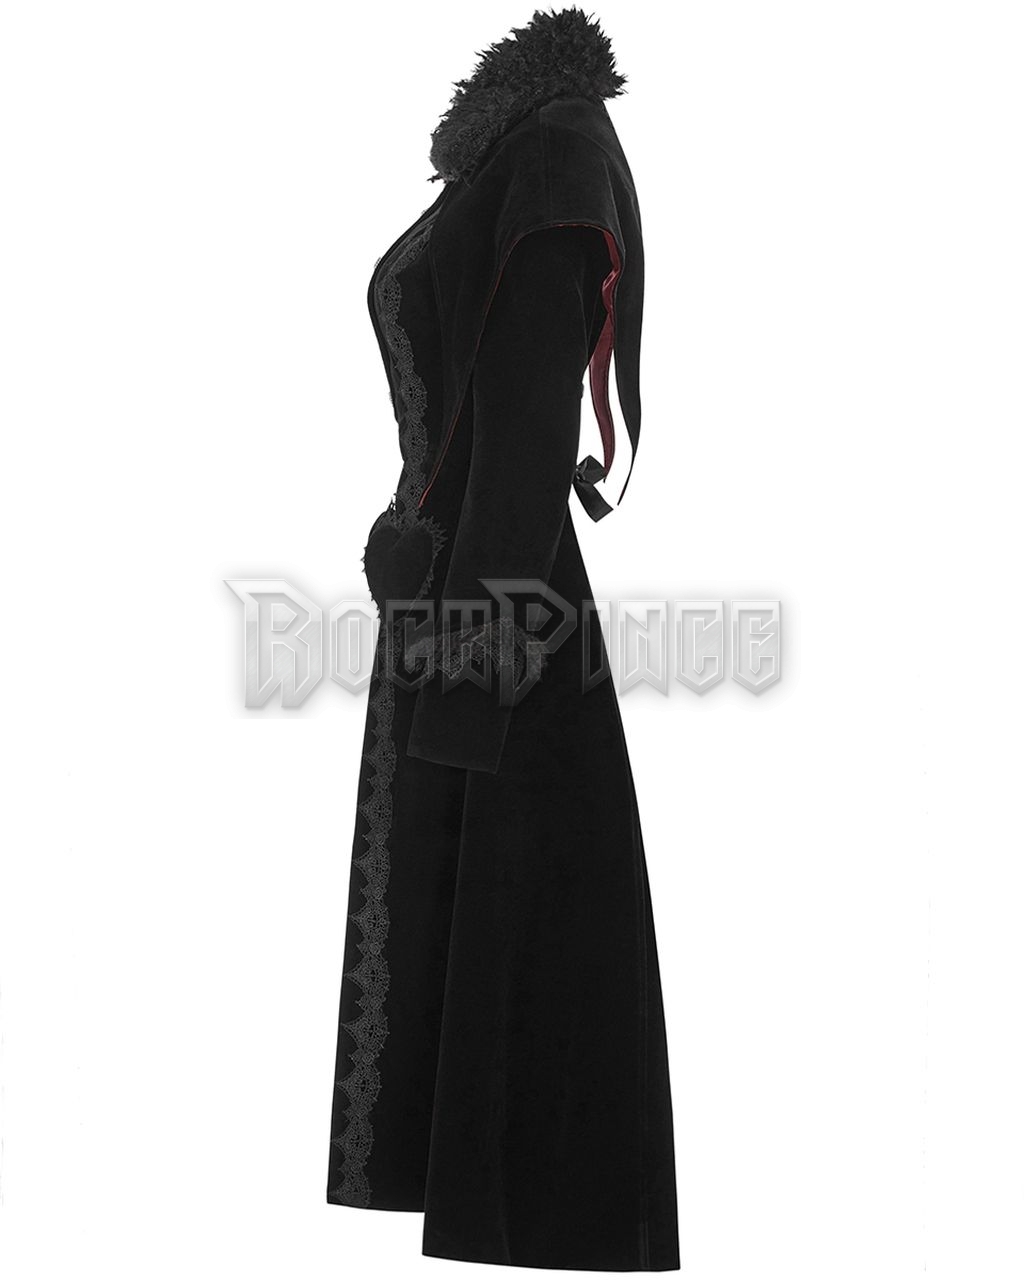 BLACK HEART - női kabát WLY-100/BK